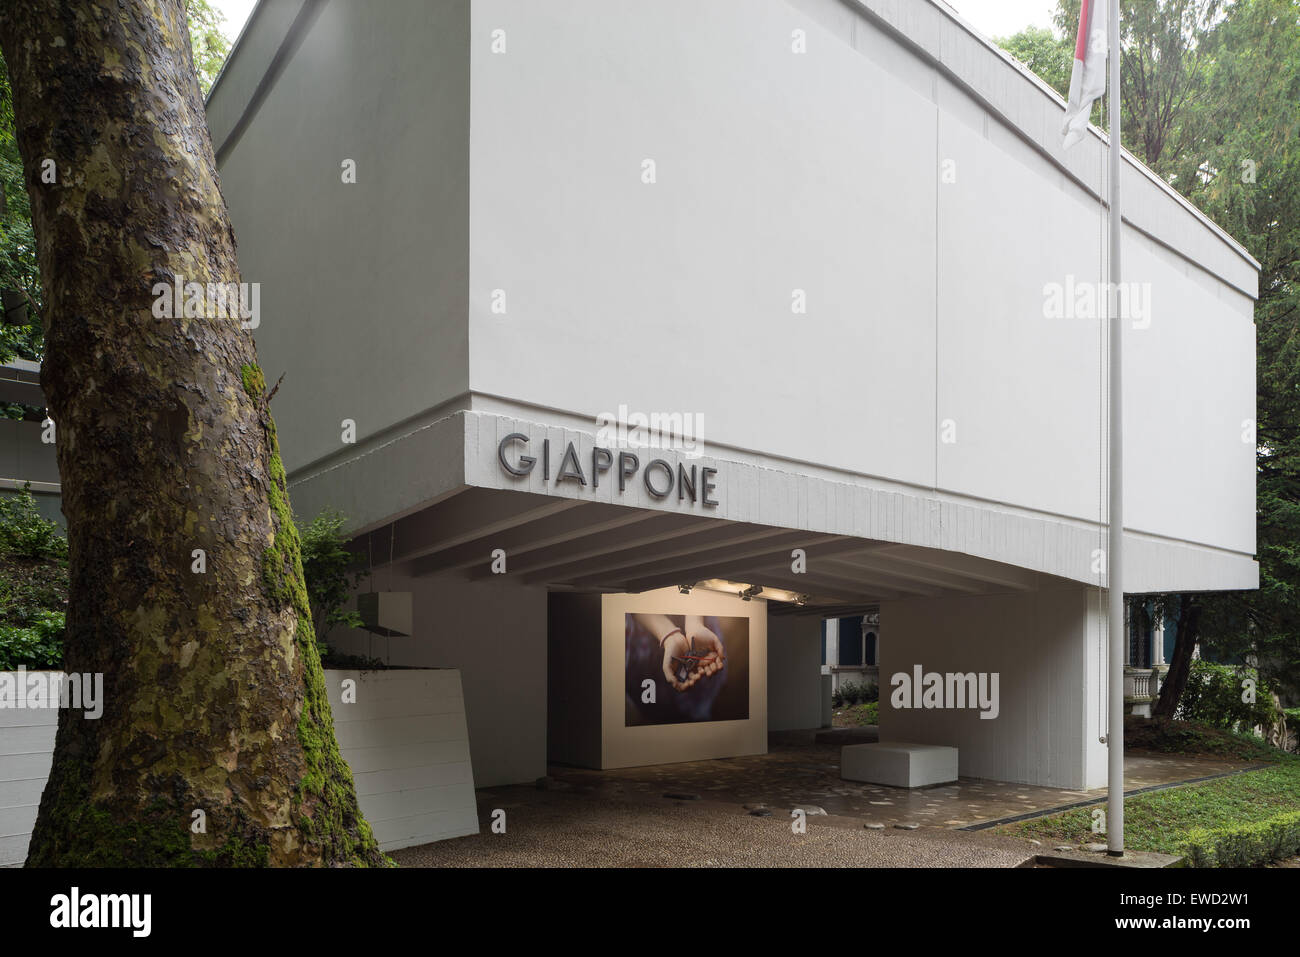 Japanischen Pavillon auf der Biennale in Venedig 2015. Schlüssel in der Hand, Chiharu Shiota. Stockfoto